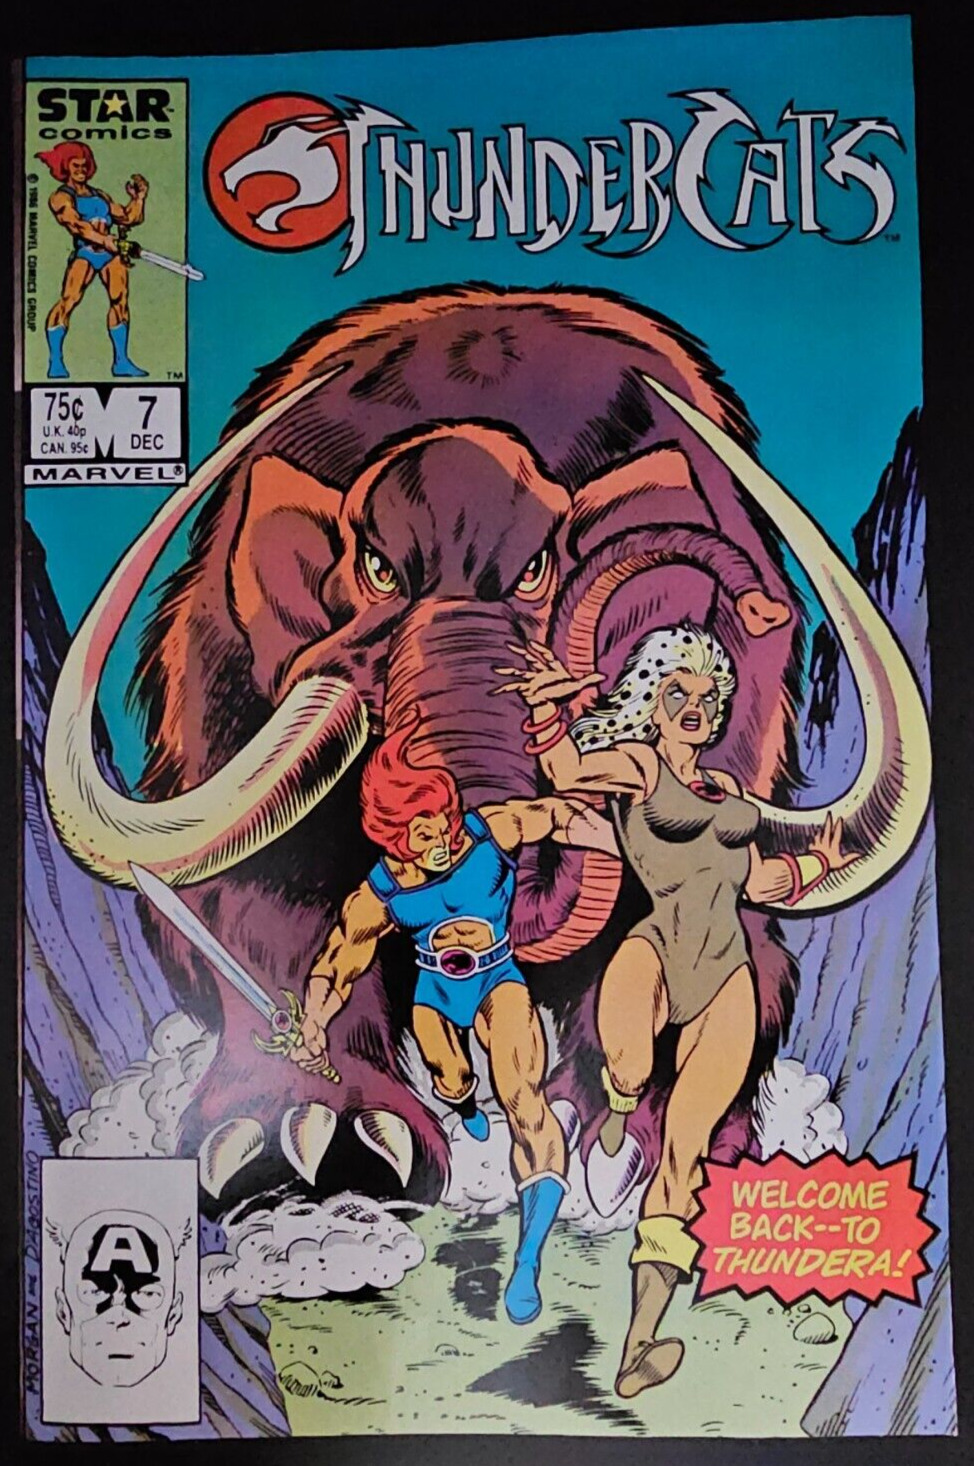 Thundercats Comic Book Star Comics Marvel Comics No. 7 1986 RAW